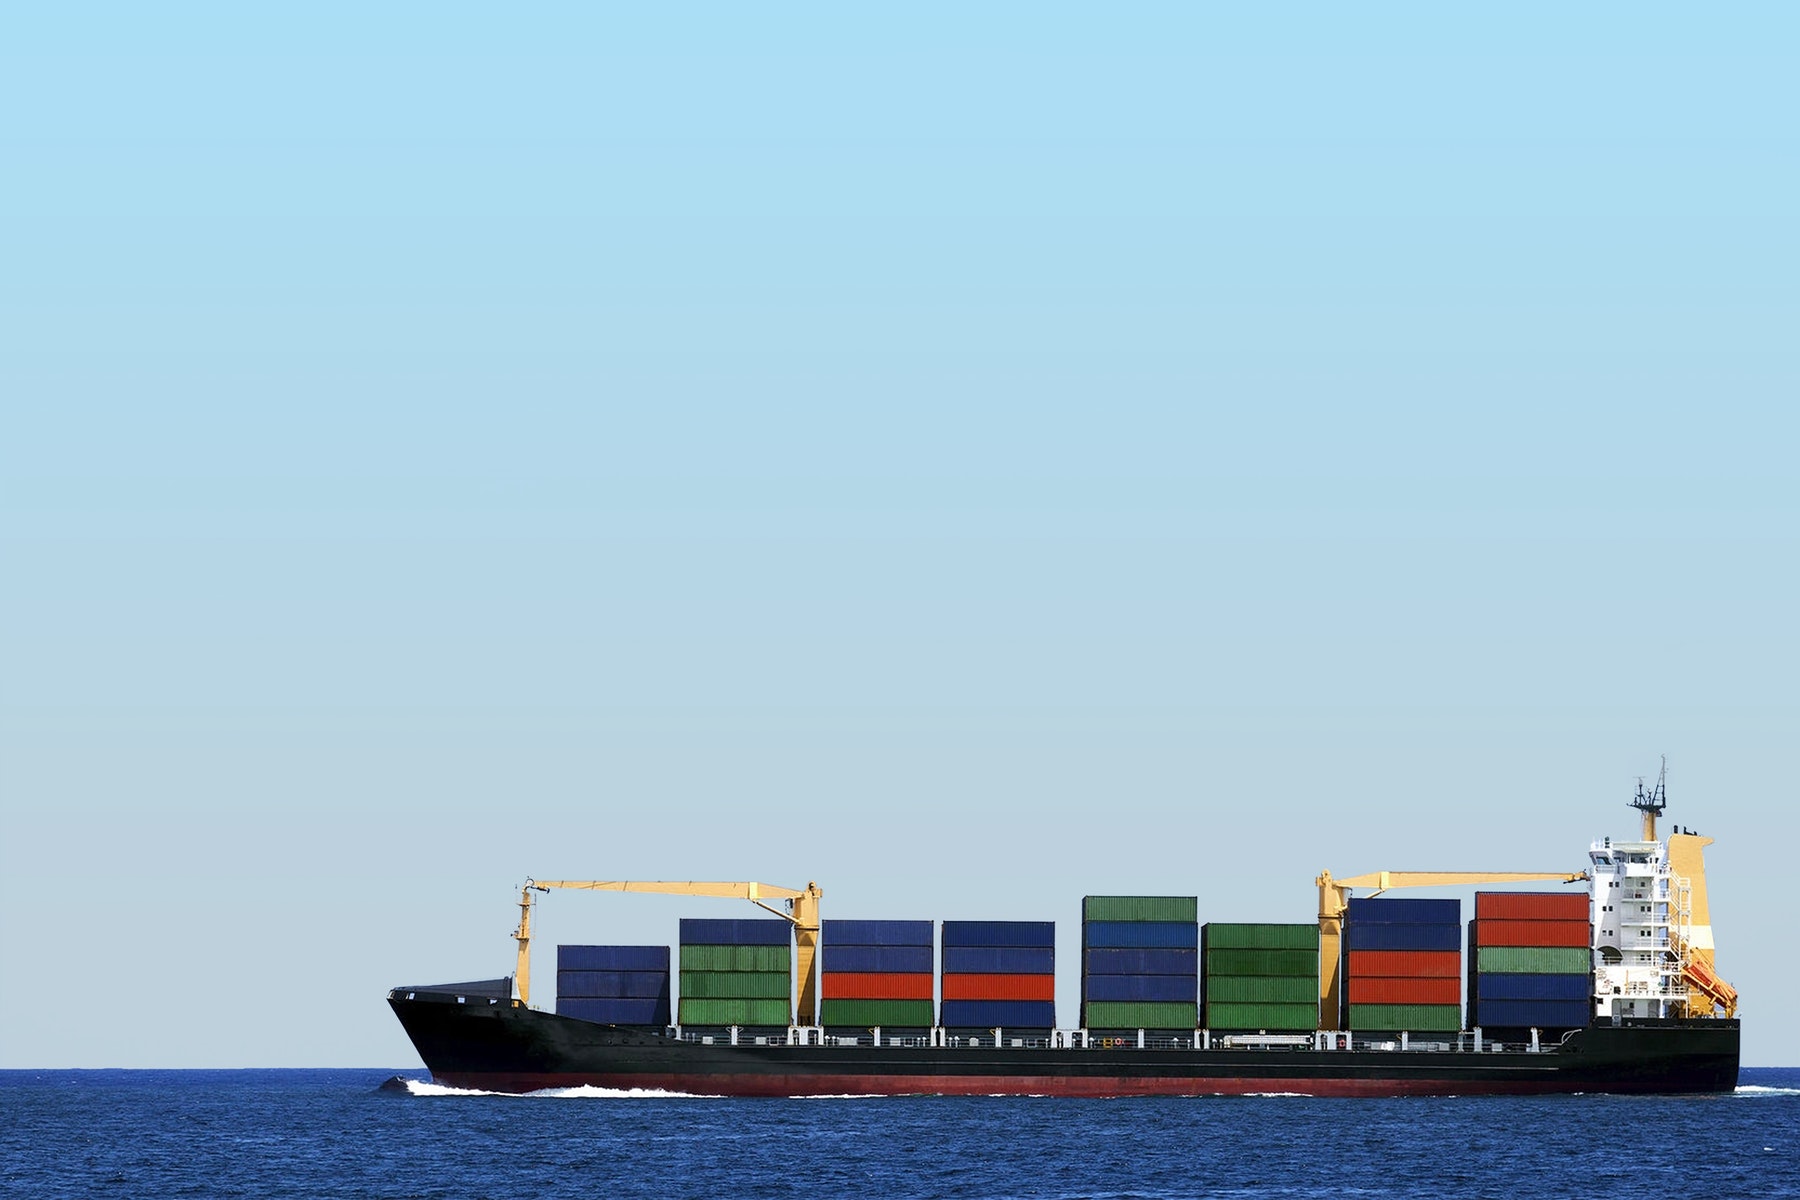 港口拥堵影响亚洲内部服务，货物积压、运力短缺需船公司注入运力